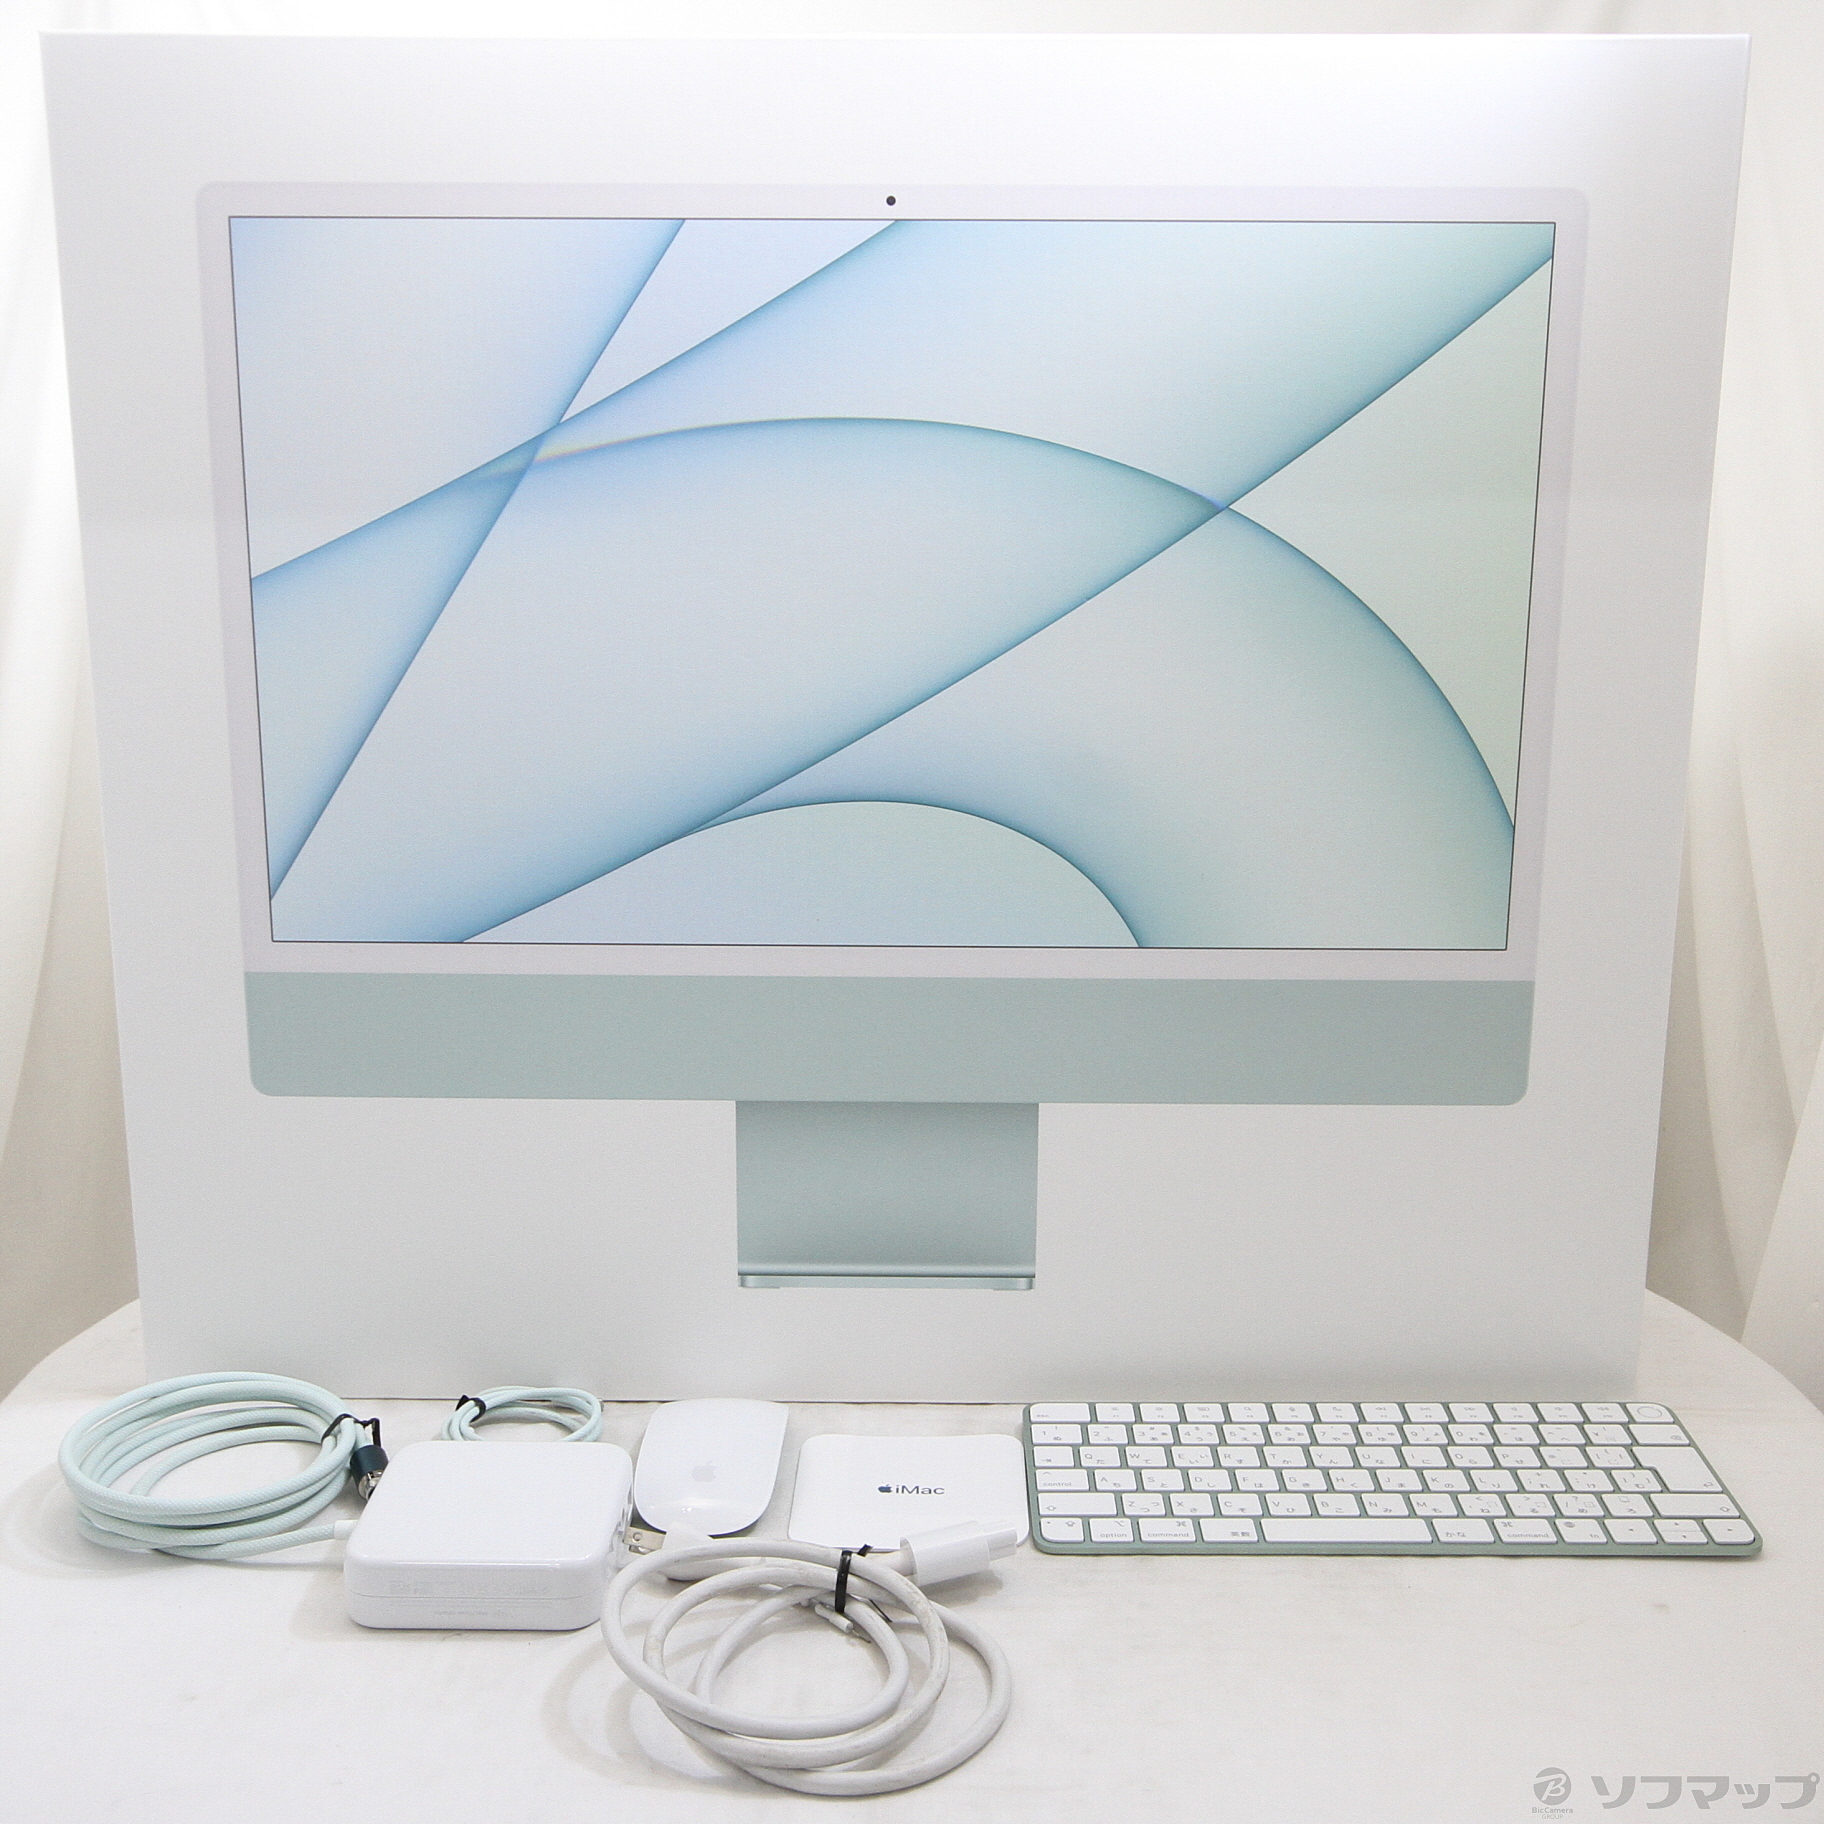 iMac グリーン 本体のみ ジャンク - デスクトップ型PC